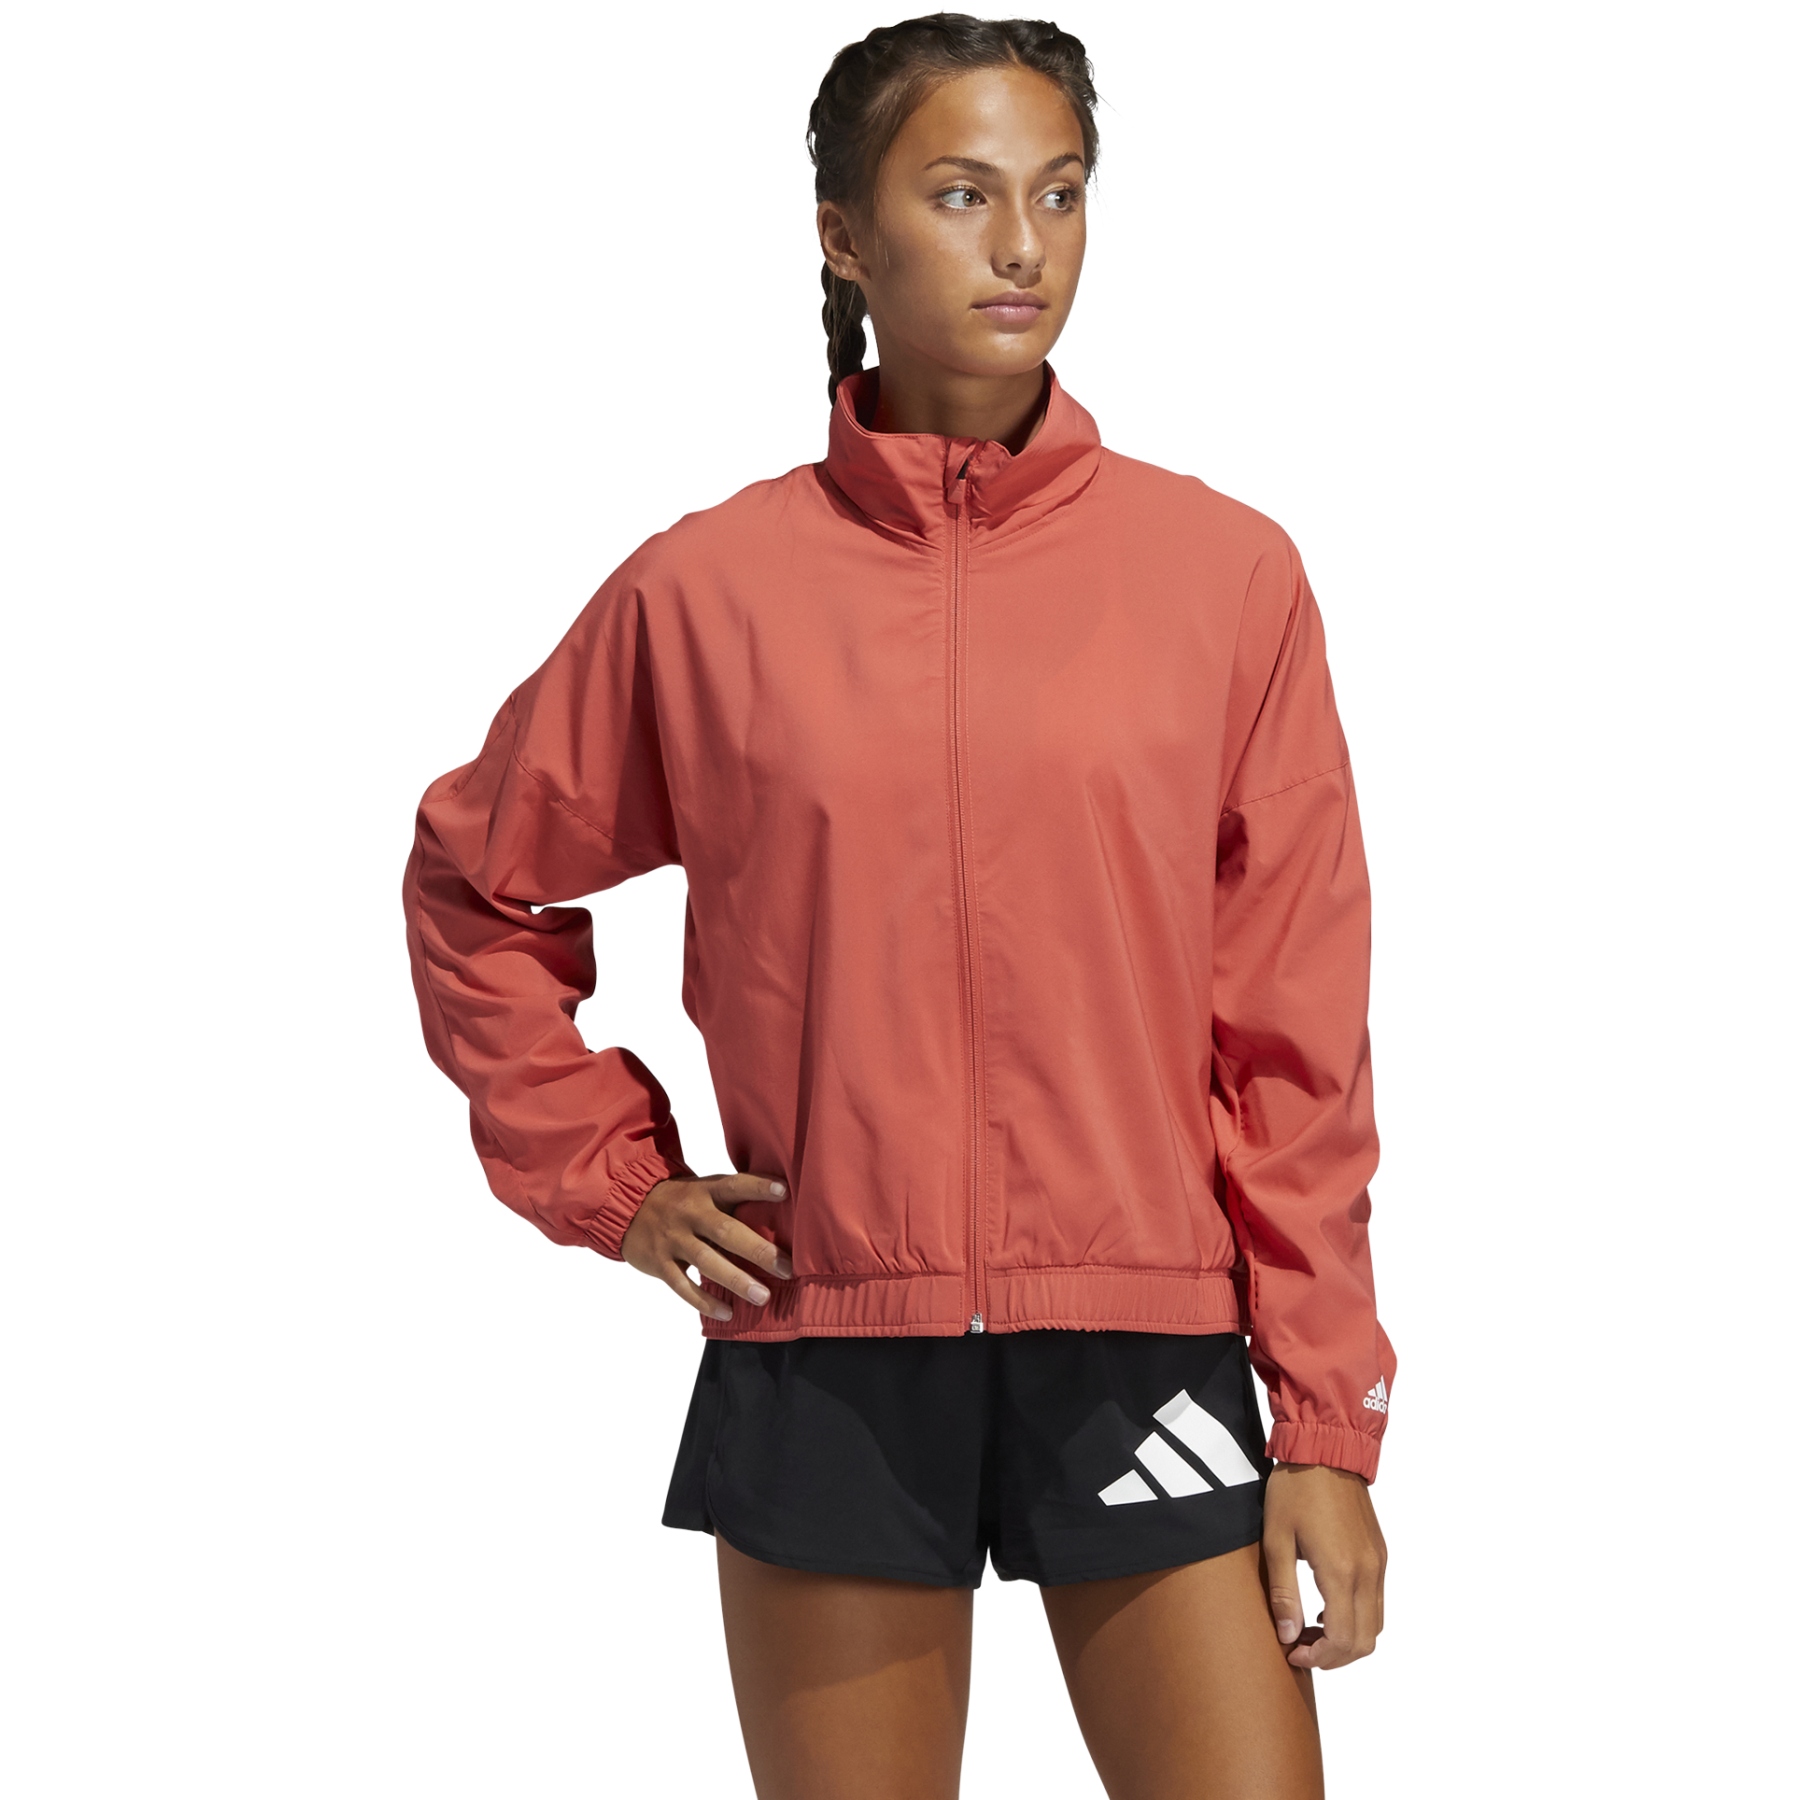 Produktbild von adidas Frauen 3 Bar Logo Warm-Up Sports Jacke - crew red/white GL0694